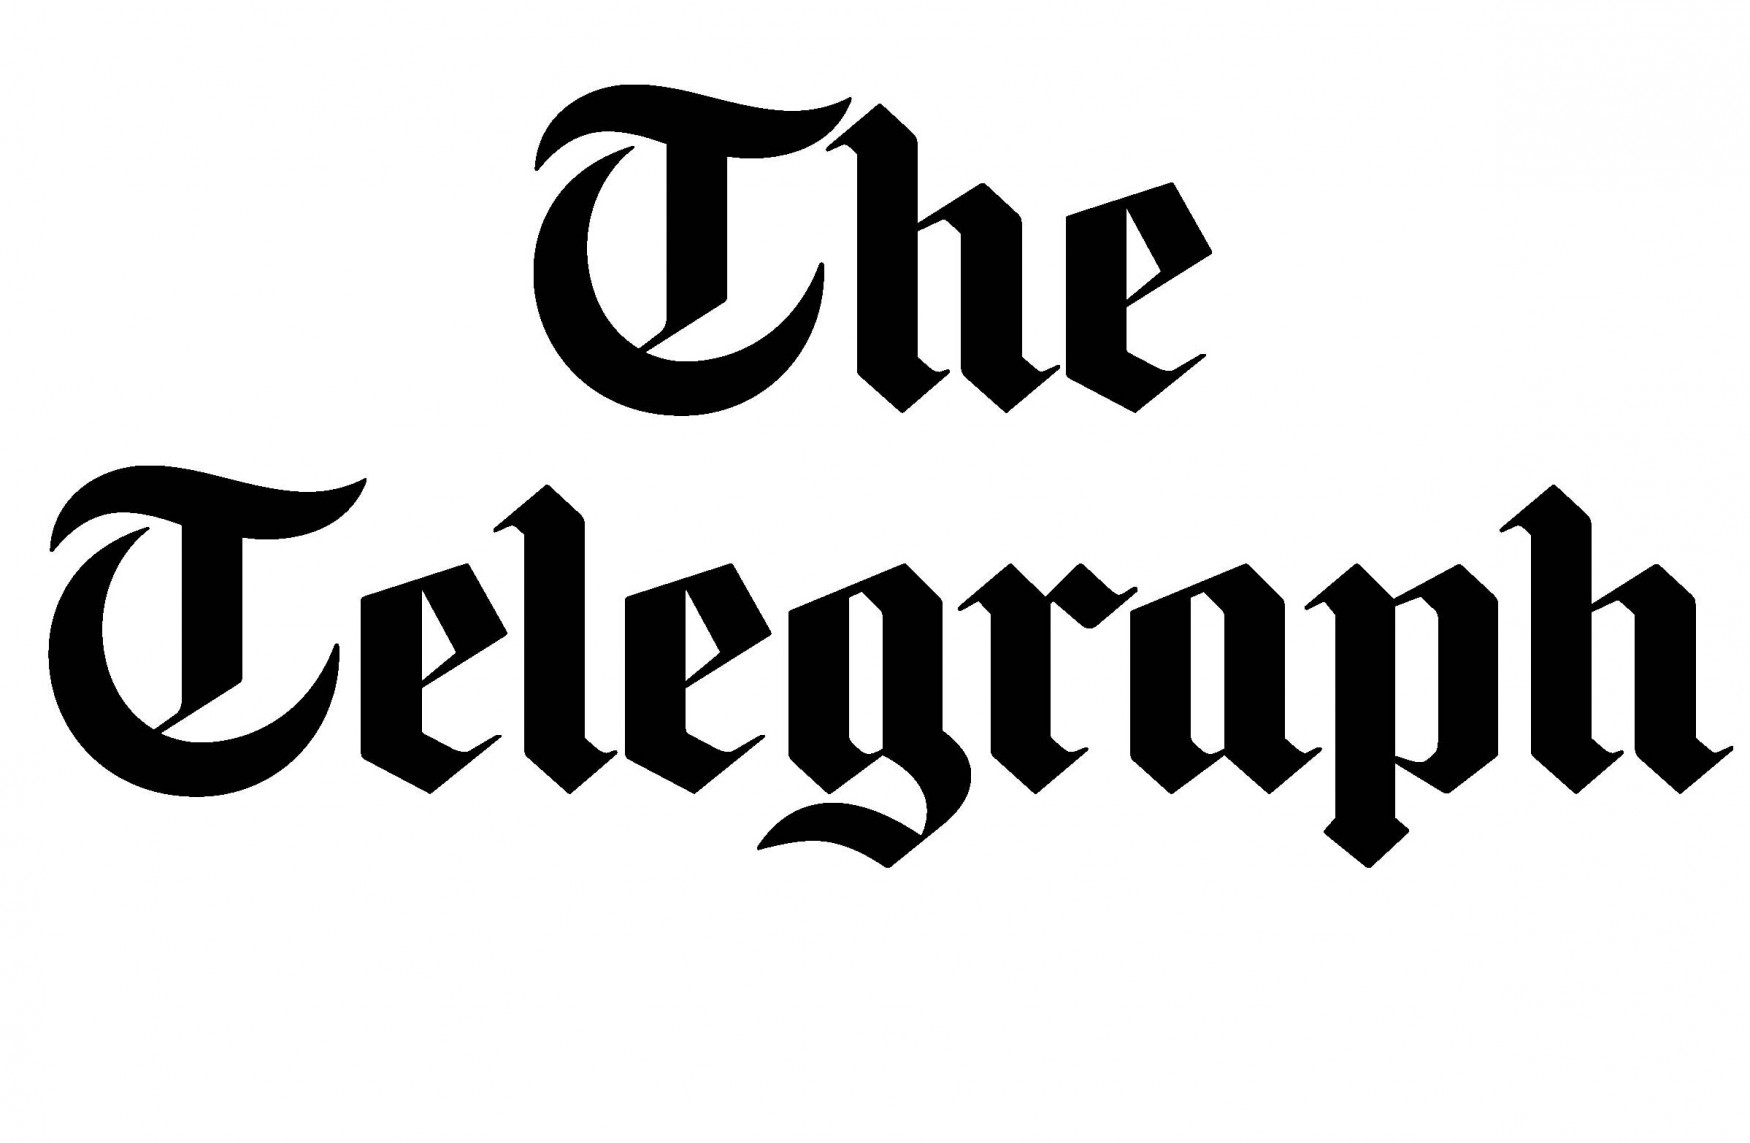 telegraph-logo-1750x1143.jpg